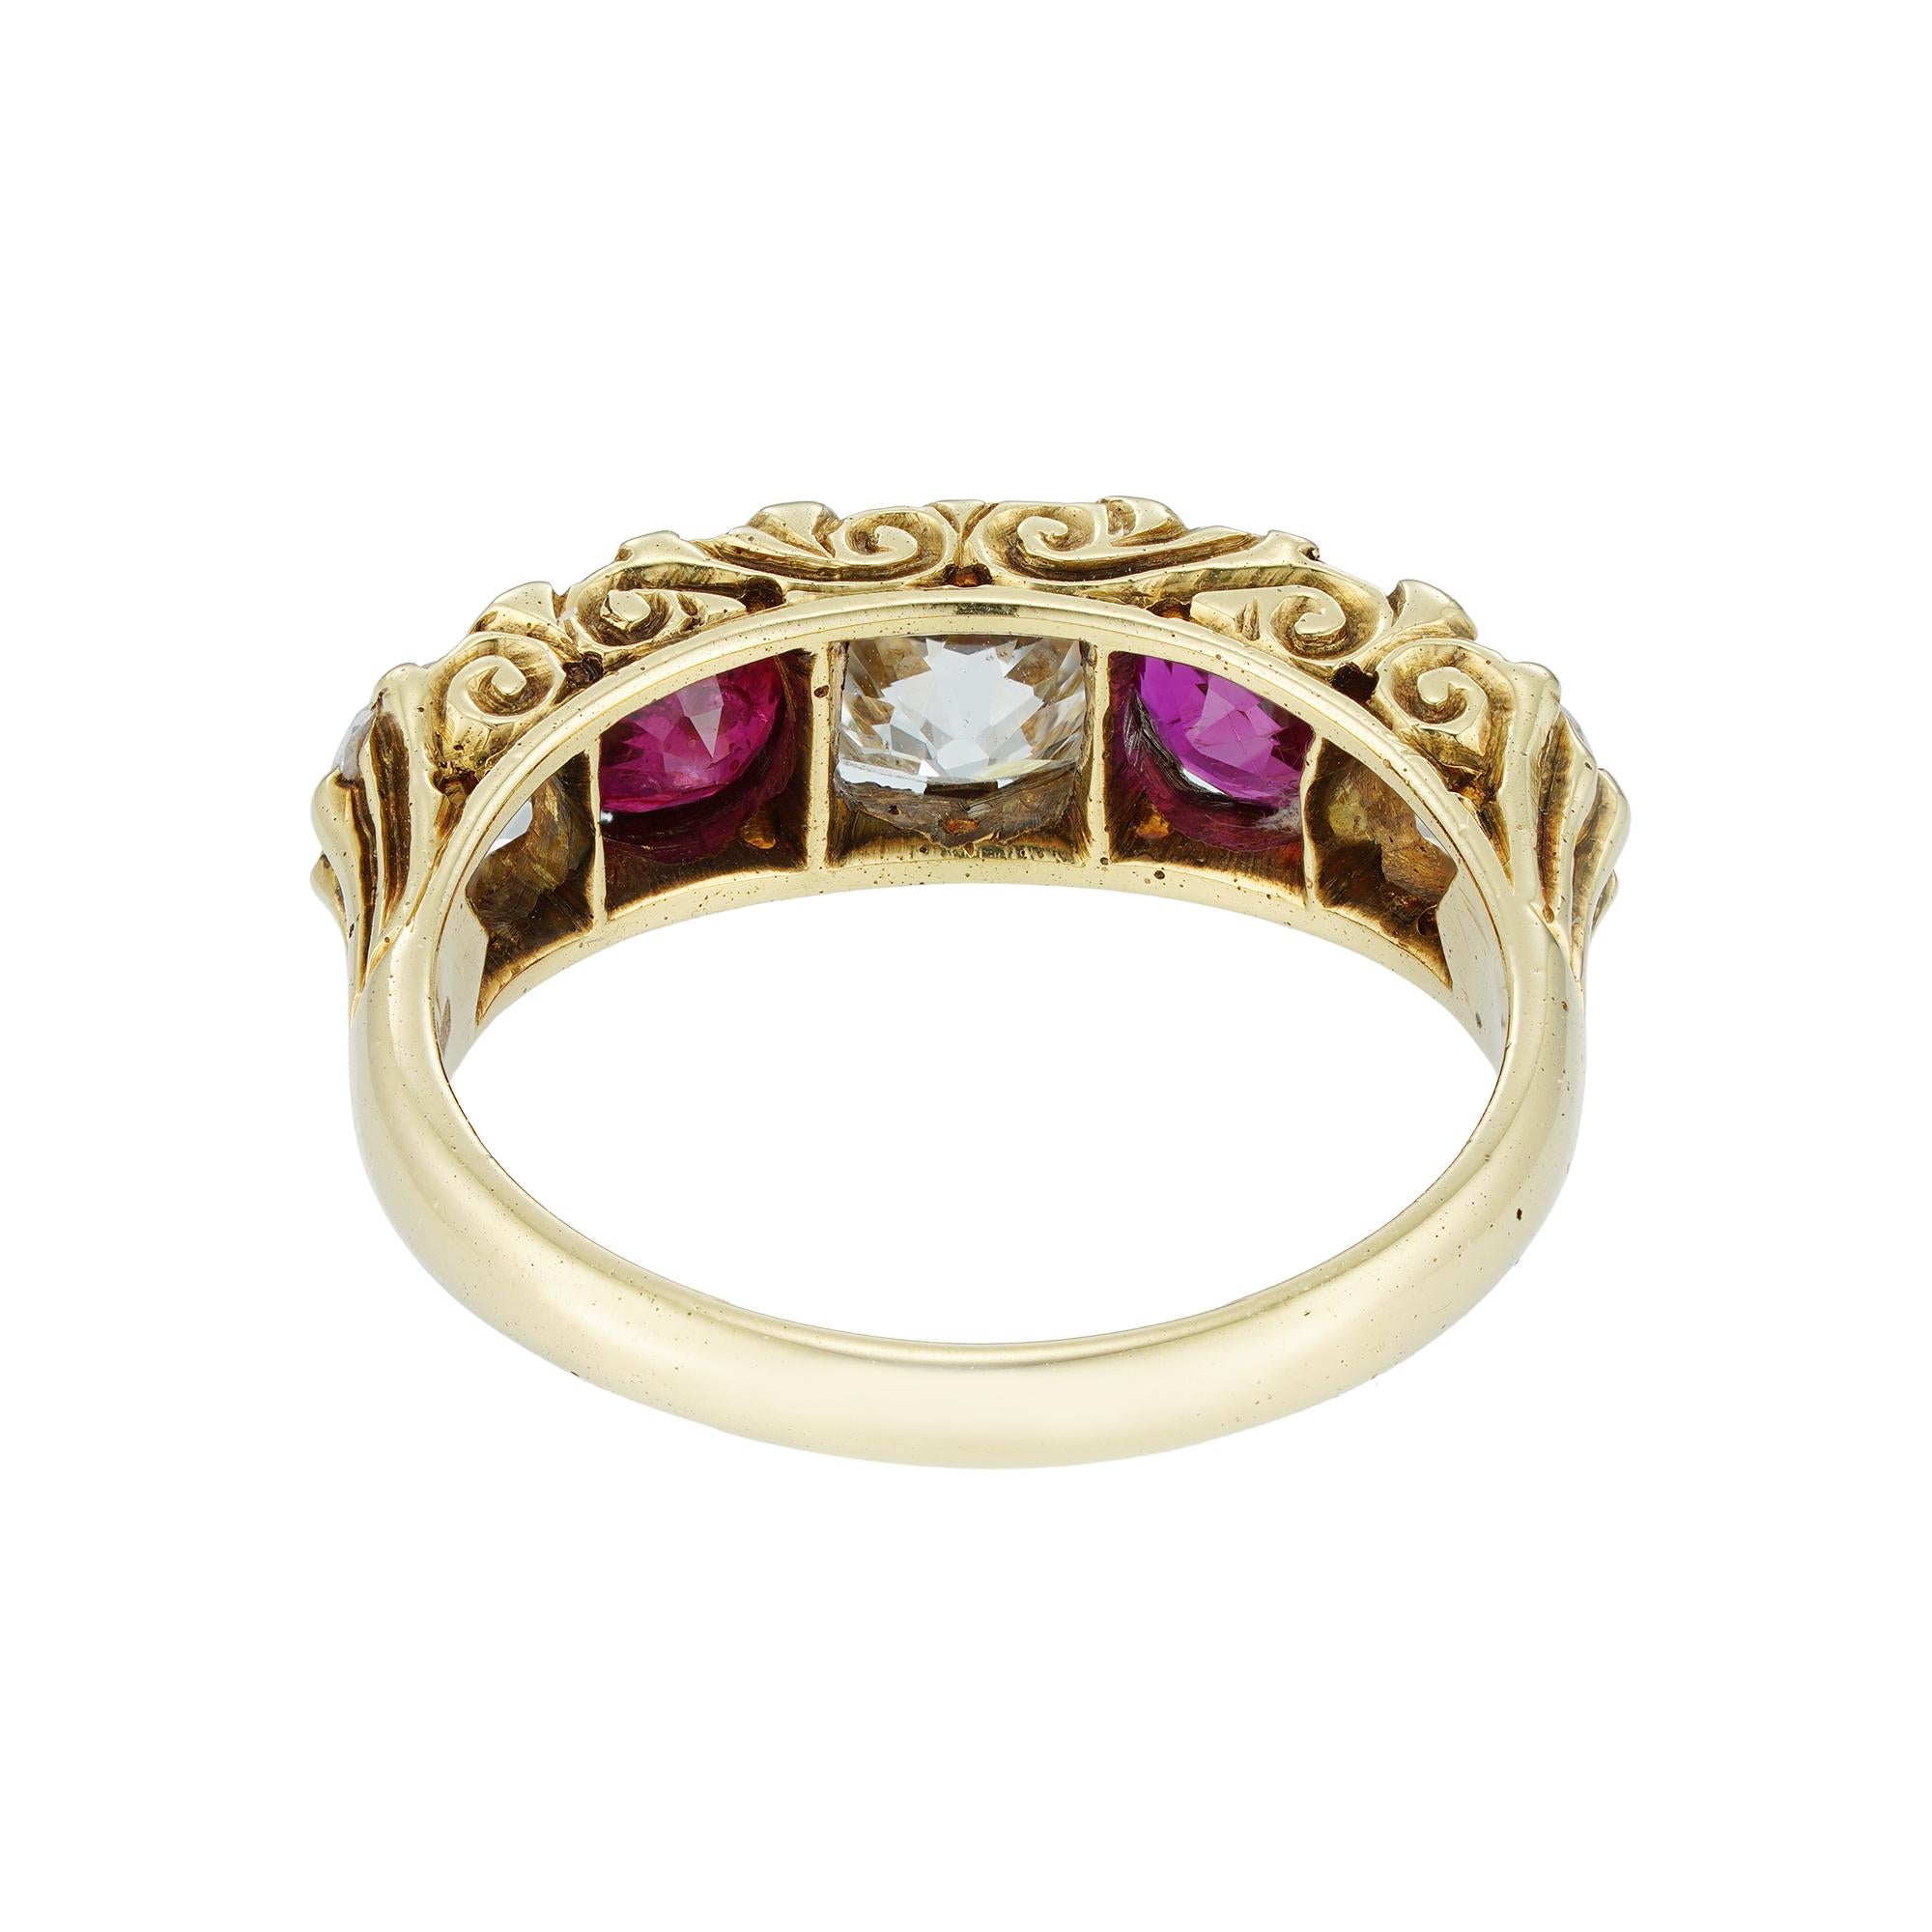 Ein fünfsteiniger Rubin- und Diamantring im viktorianischen Stil. Der Ring ist abwechselnd mit drei Diamanten im Brillantschliff und zwei runden, facettierten Rubinen besetzt, wobei die Diamanten ein geschätztes Gesamtgewicht von 1,25 Karat und die